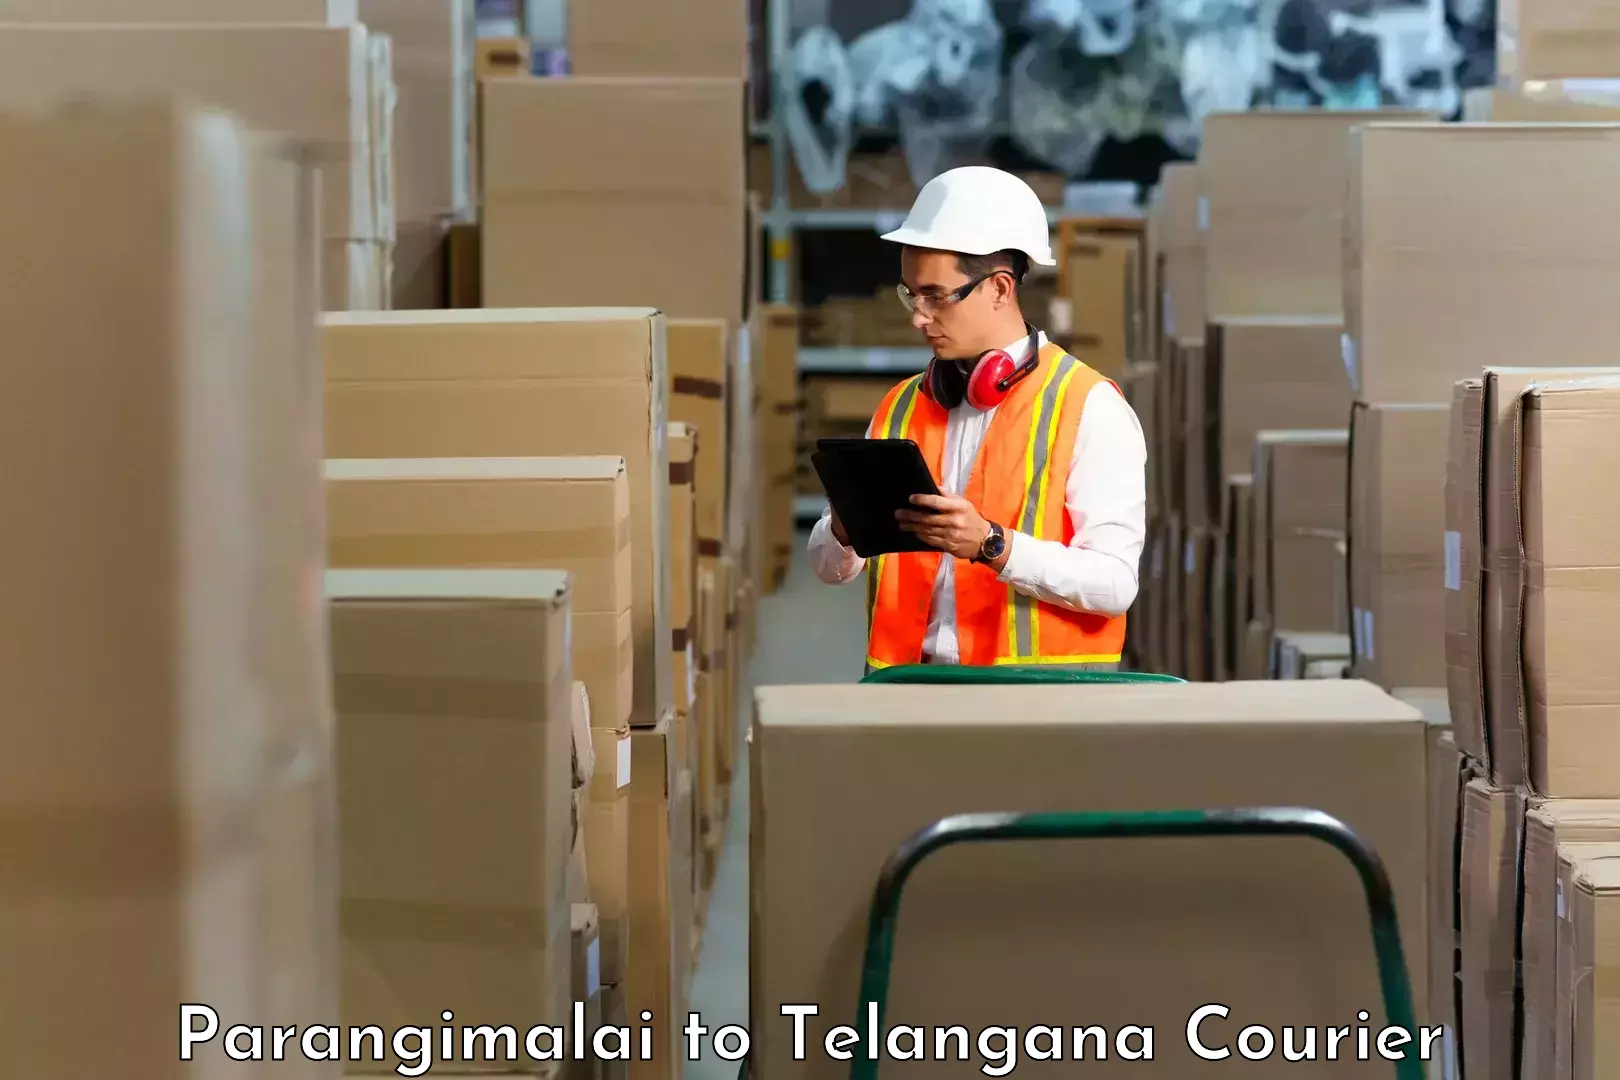 State-of-the-art courier technology Parangimalai to Yellandu